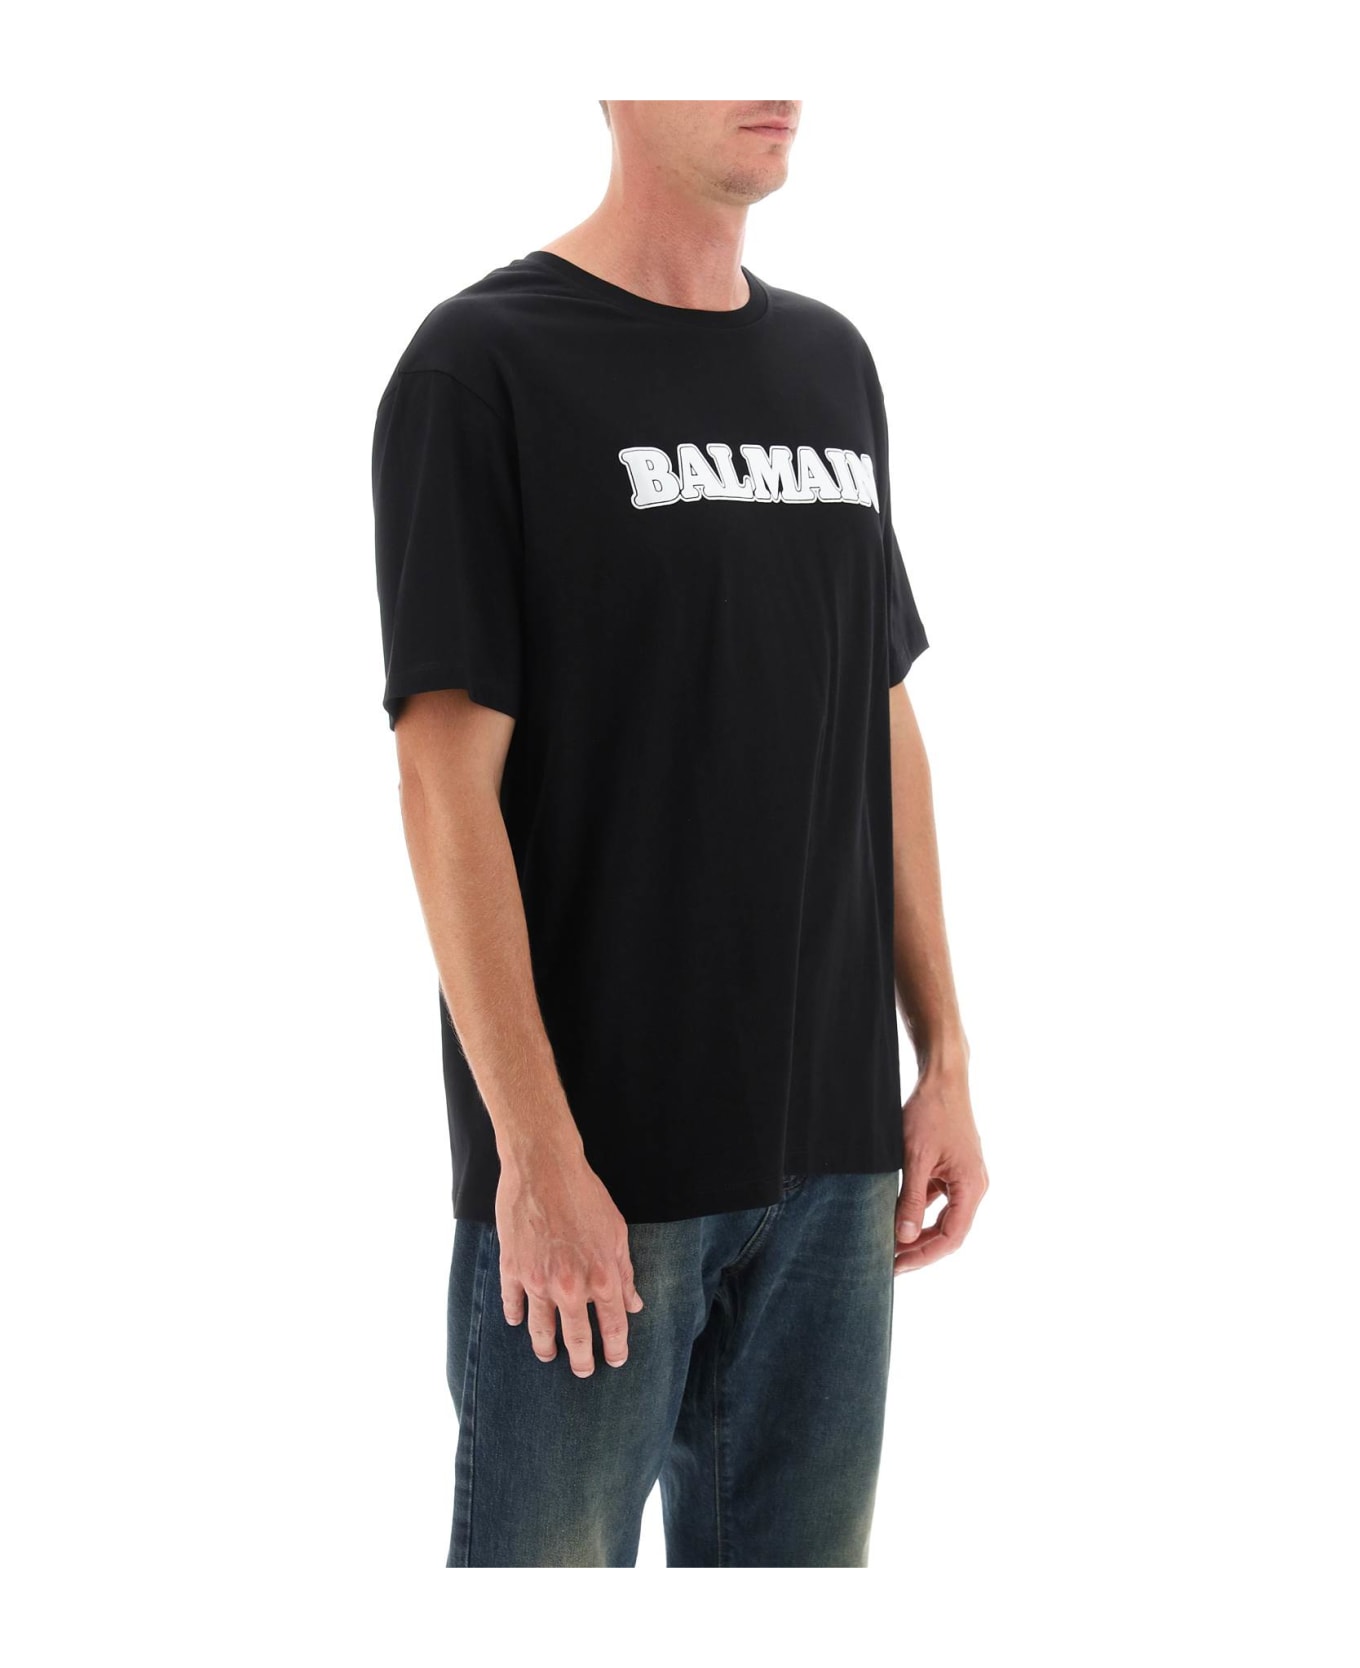 Balmain R O T-shirt - Noir/blanc シャツ